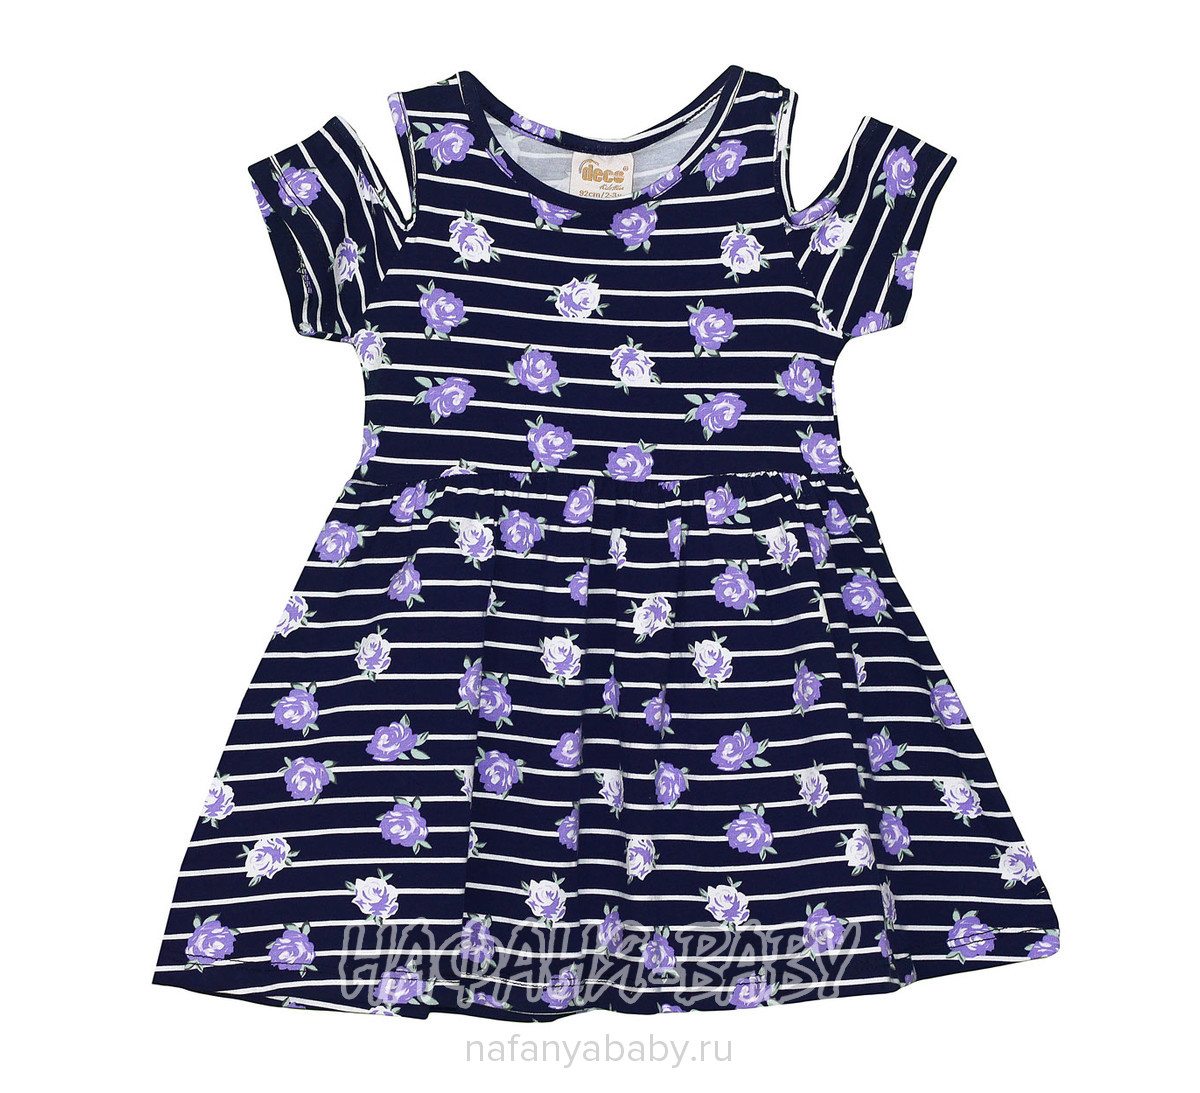 Детское платье DECO арт: 942, 1-4 года, 5-9 лет, цвет темно-синий с сиреневыми цветами, оптом Турция